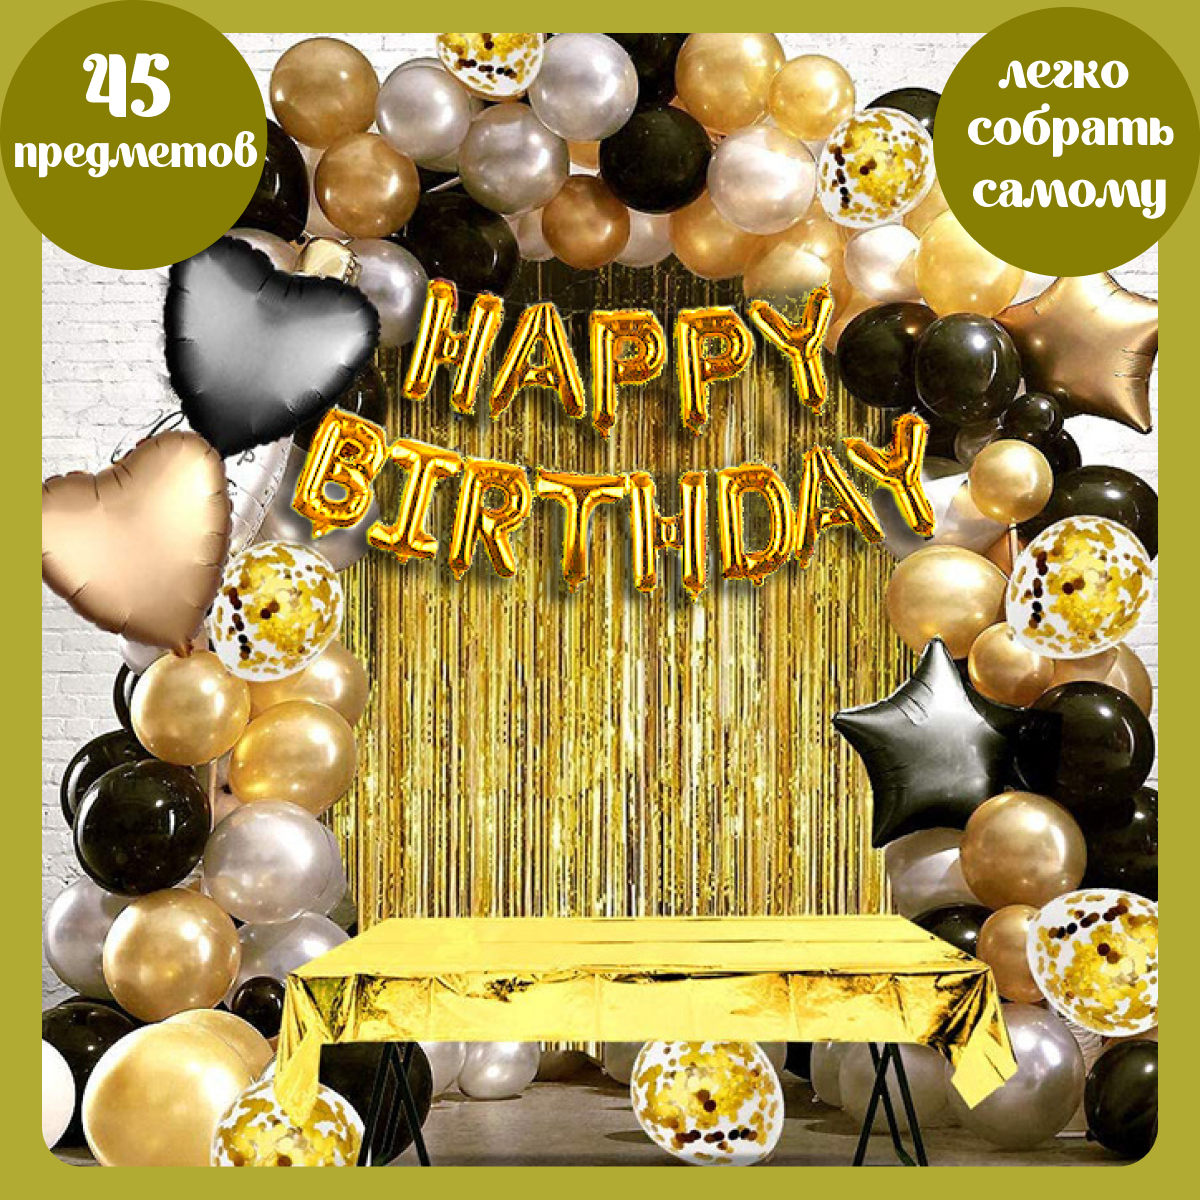 Воздушные шары набор Мишины шарики для фотозоны на день рождения с фольгированными буквами Happy Birthday - фото 1